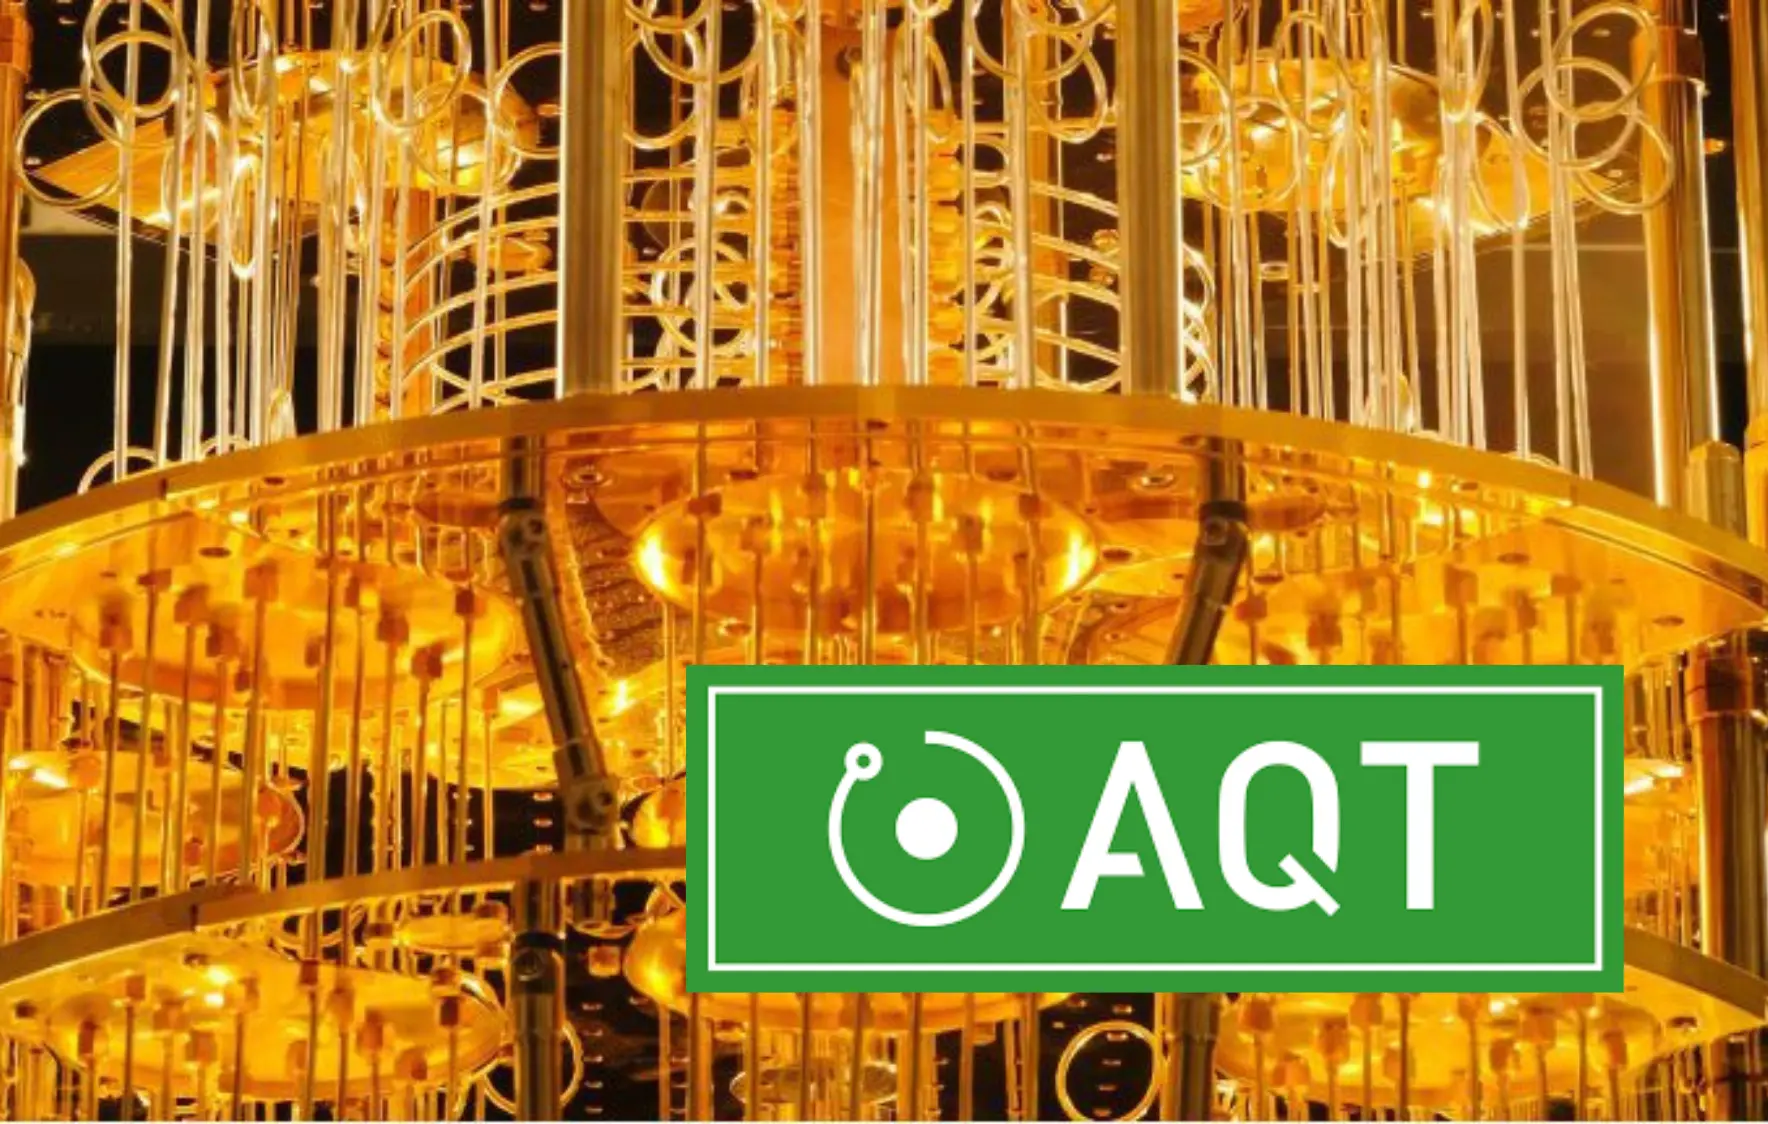 Teilstück eines fiktionären Quantencomputer mit dem AQT-Logo im Vordergrund.